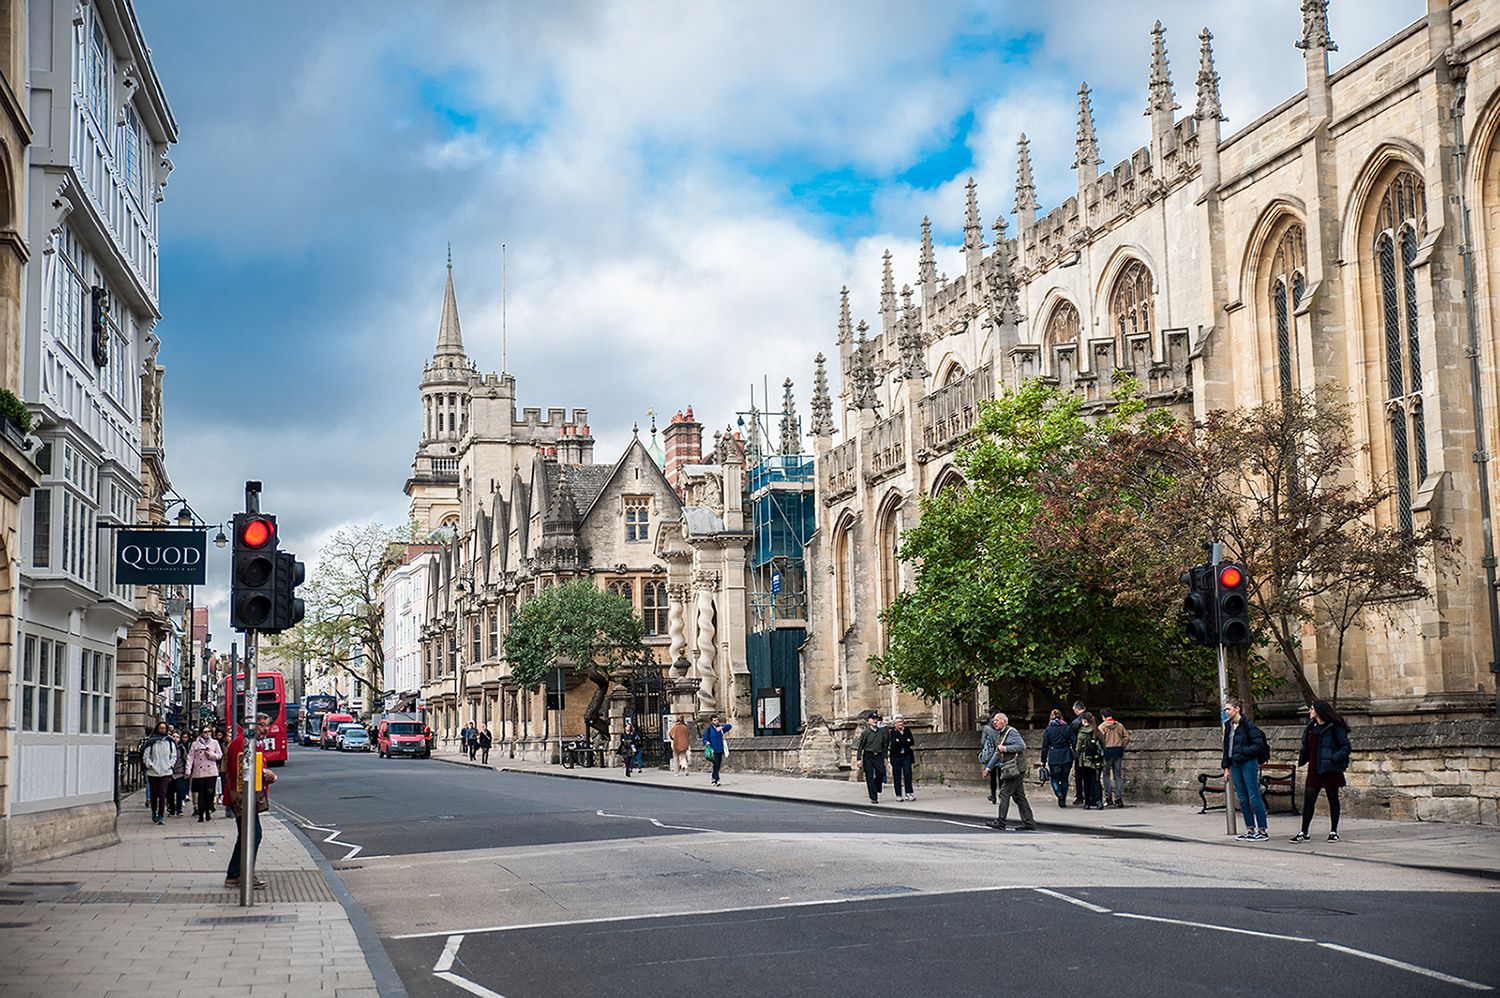 Quoi voir à Oxford, la ville aux clochers rêveurs